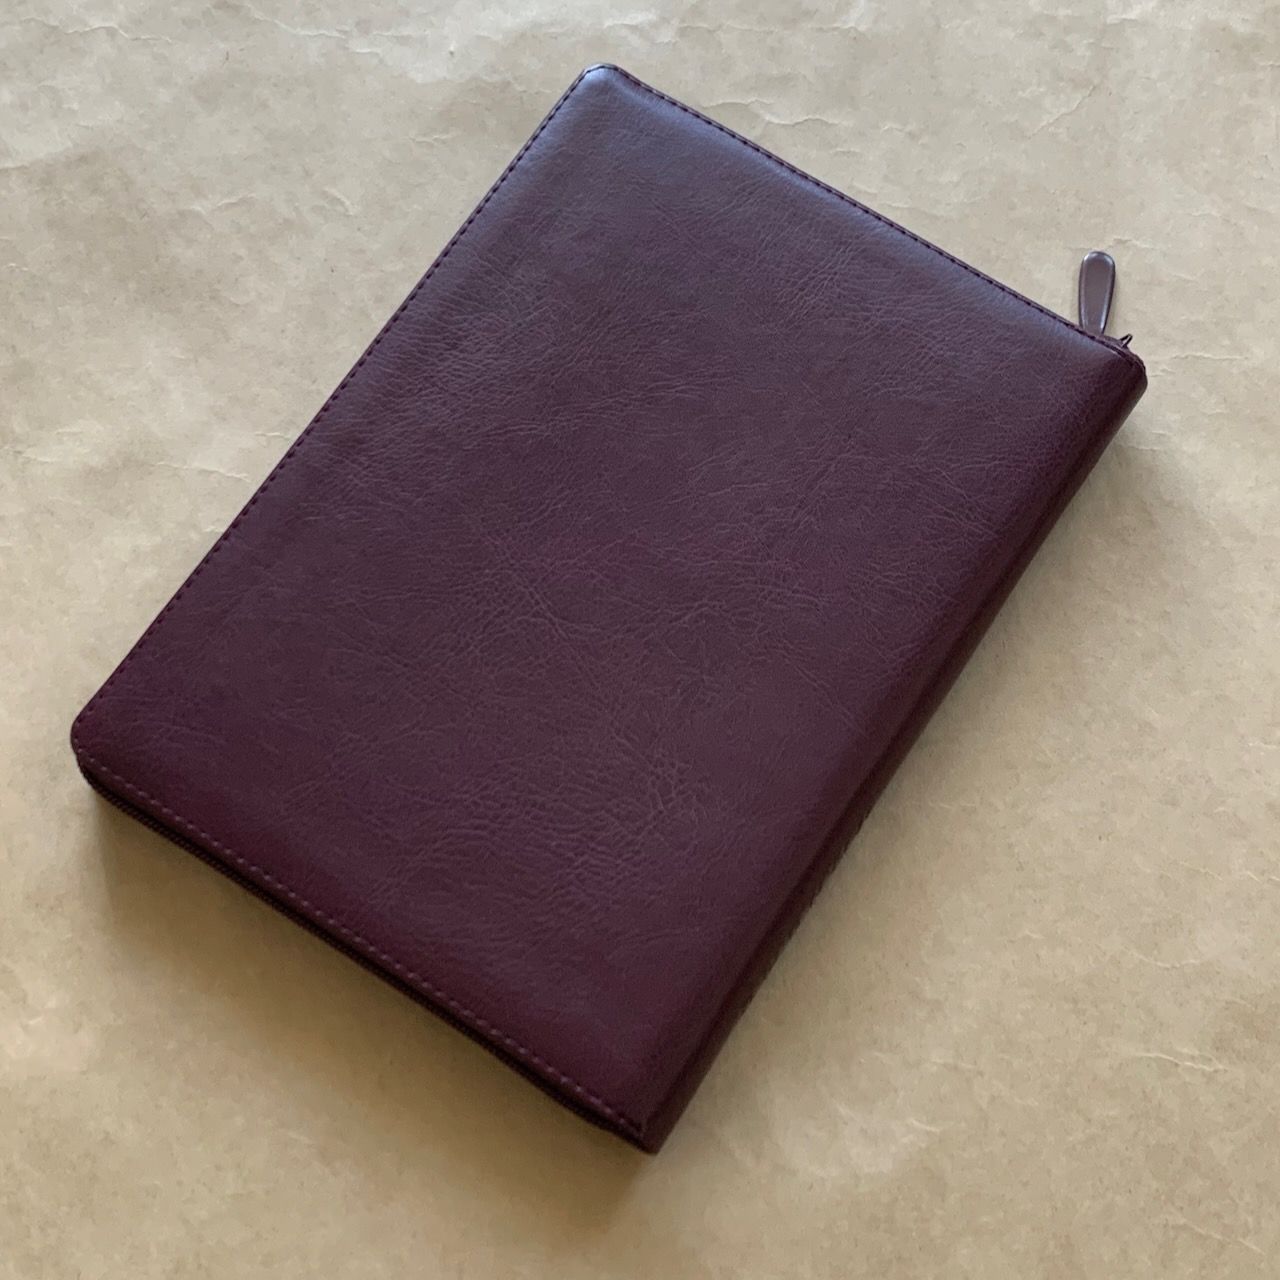 Библия 076zti код G5, дизайн "термо рамка барокко", переплет из искусственной кожи на молнии с индексами, цвет коричневый с оттенком бордо металлик, размер 180x243 мм